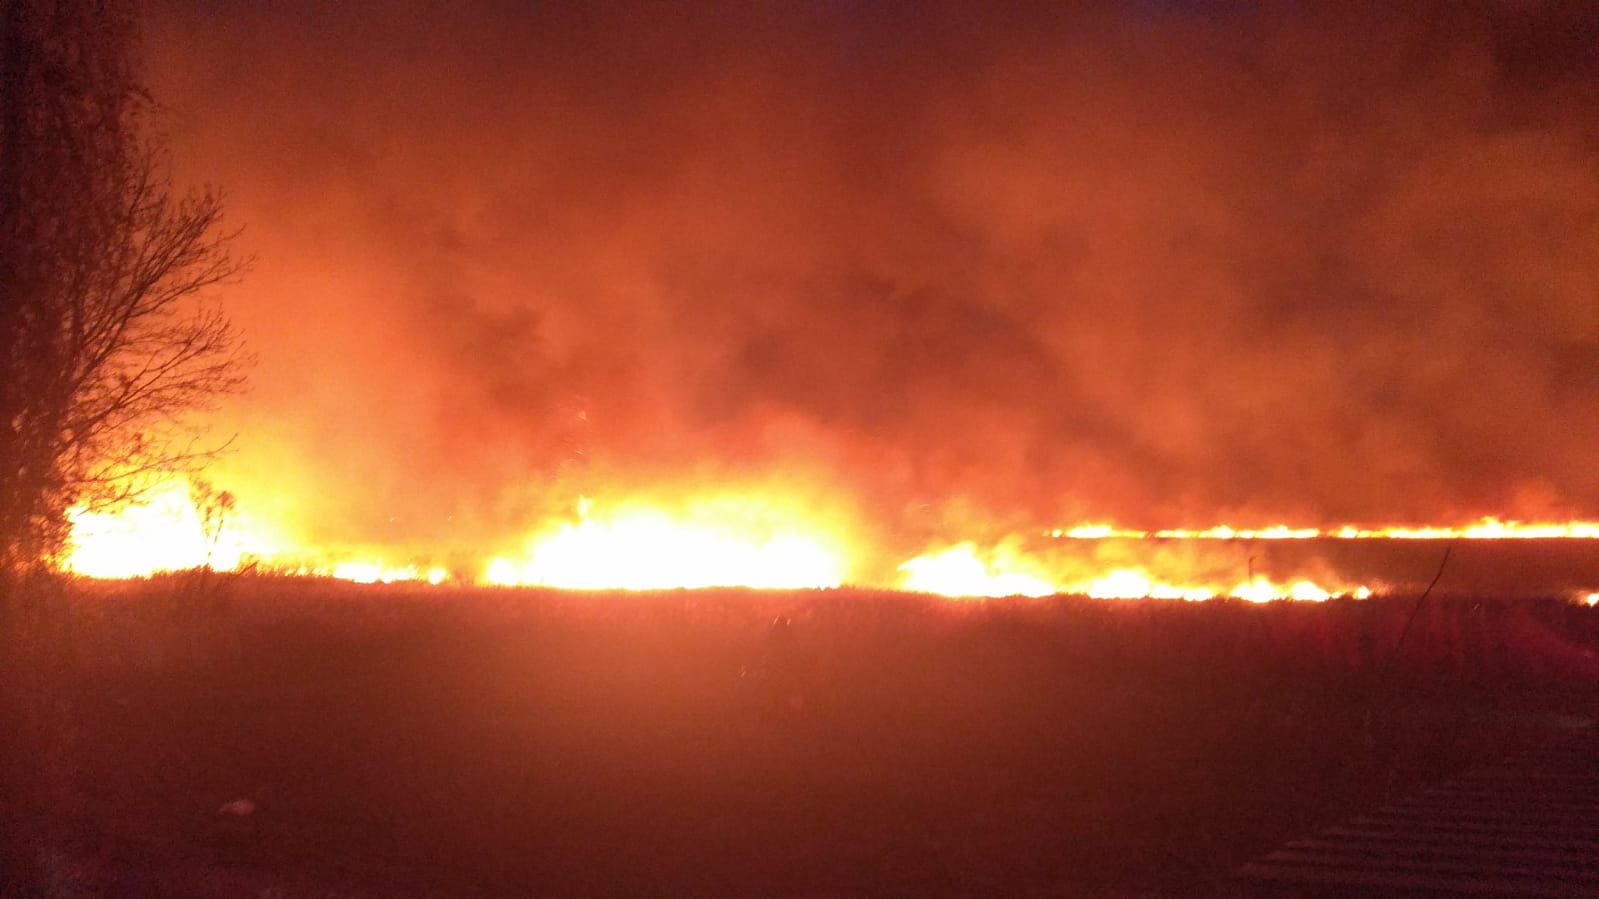  IMAGINI: Focul înghite vegetația de pe câmpurile din Dumbrava și se apropie de case